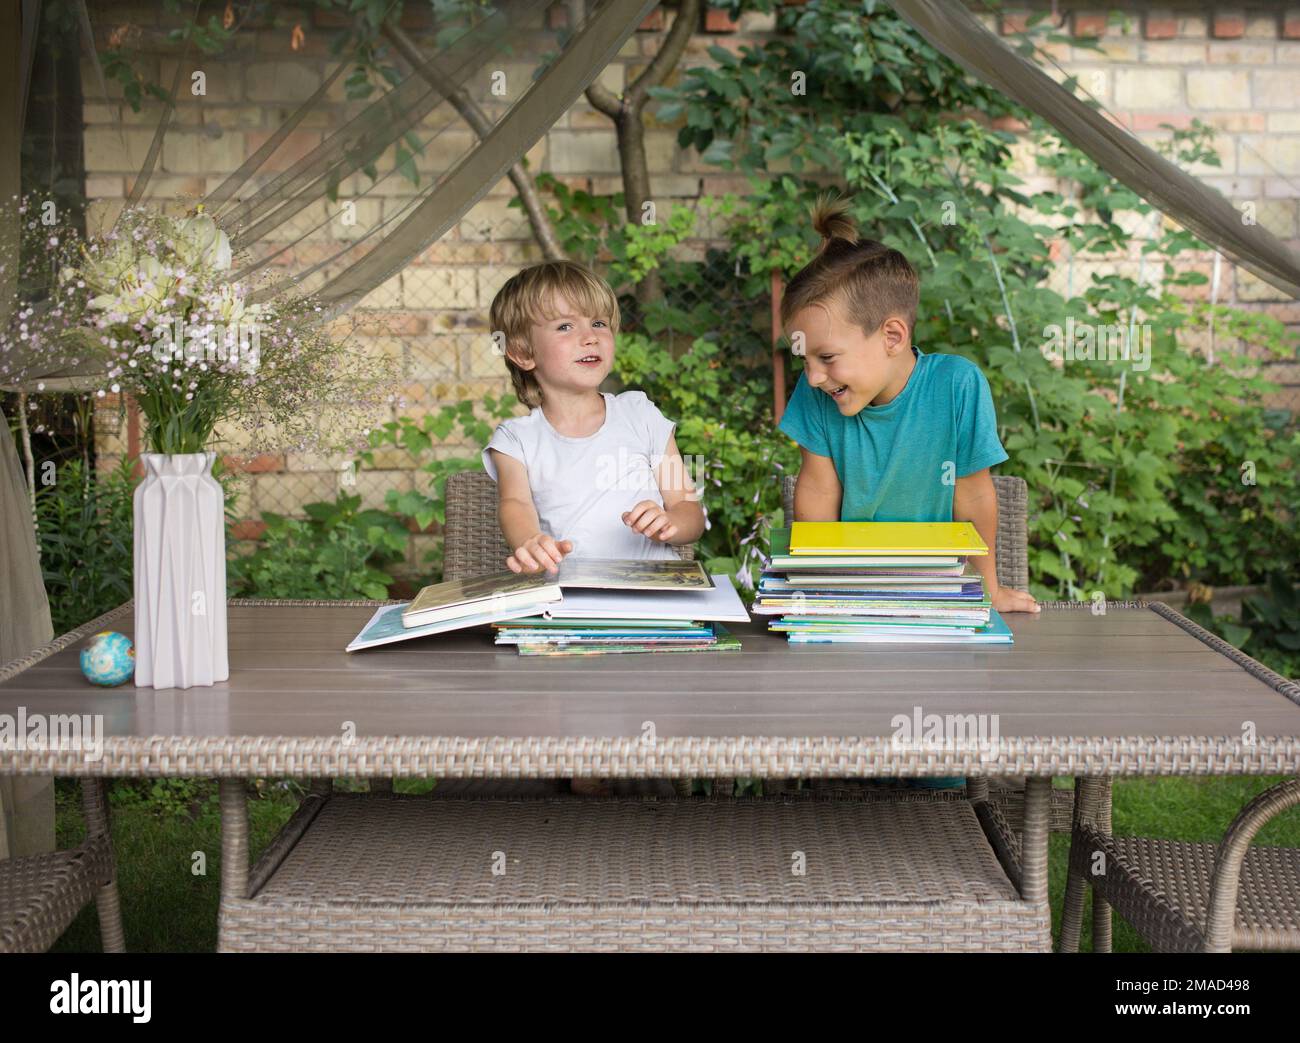 Zwei Vorschuljungen sitzen im Garten am Tisch, schauen sich Bücher an, lesen Bücher. Schulvorbereitung, Fantasieentwicklung, Kindheit, Kommunikation Stockfoto